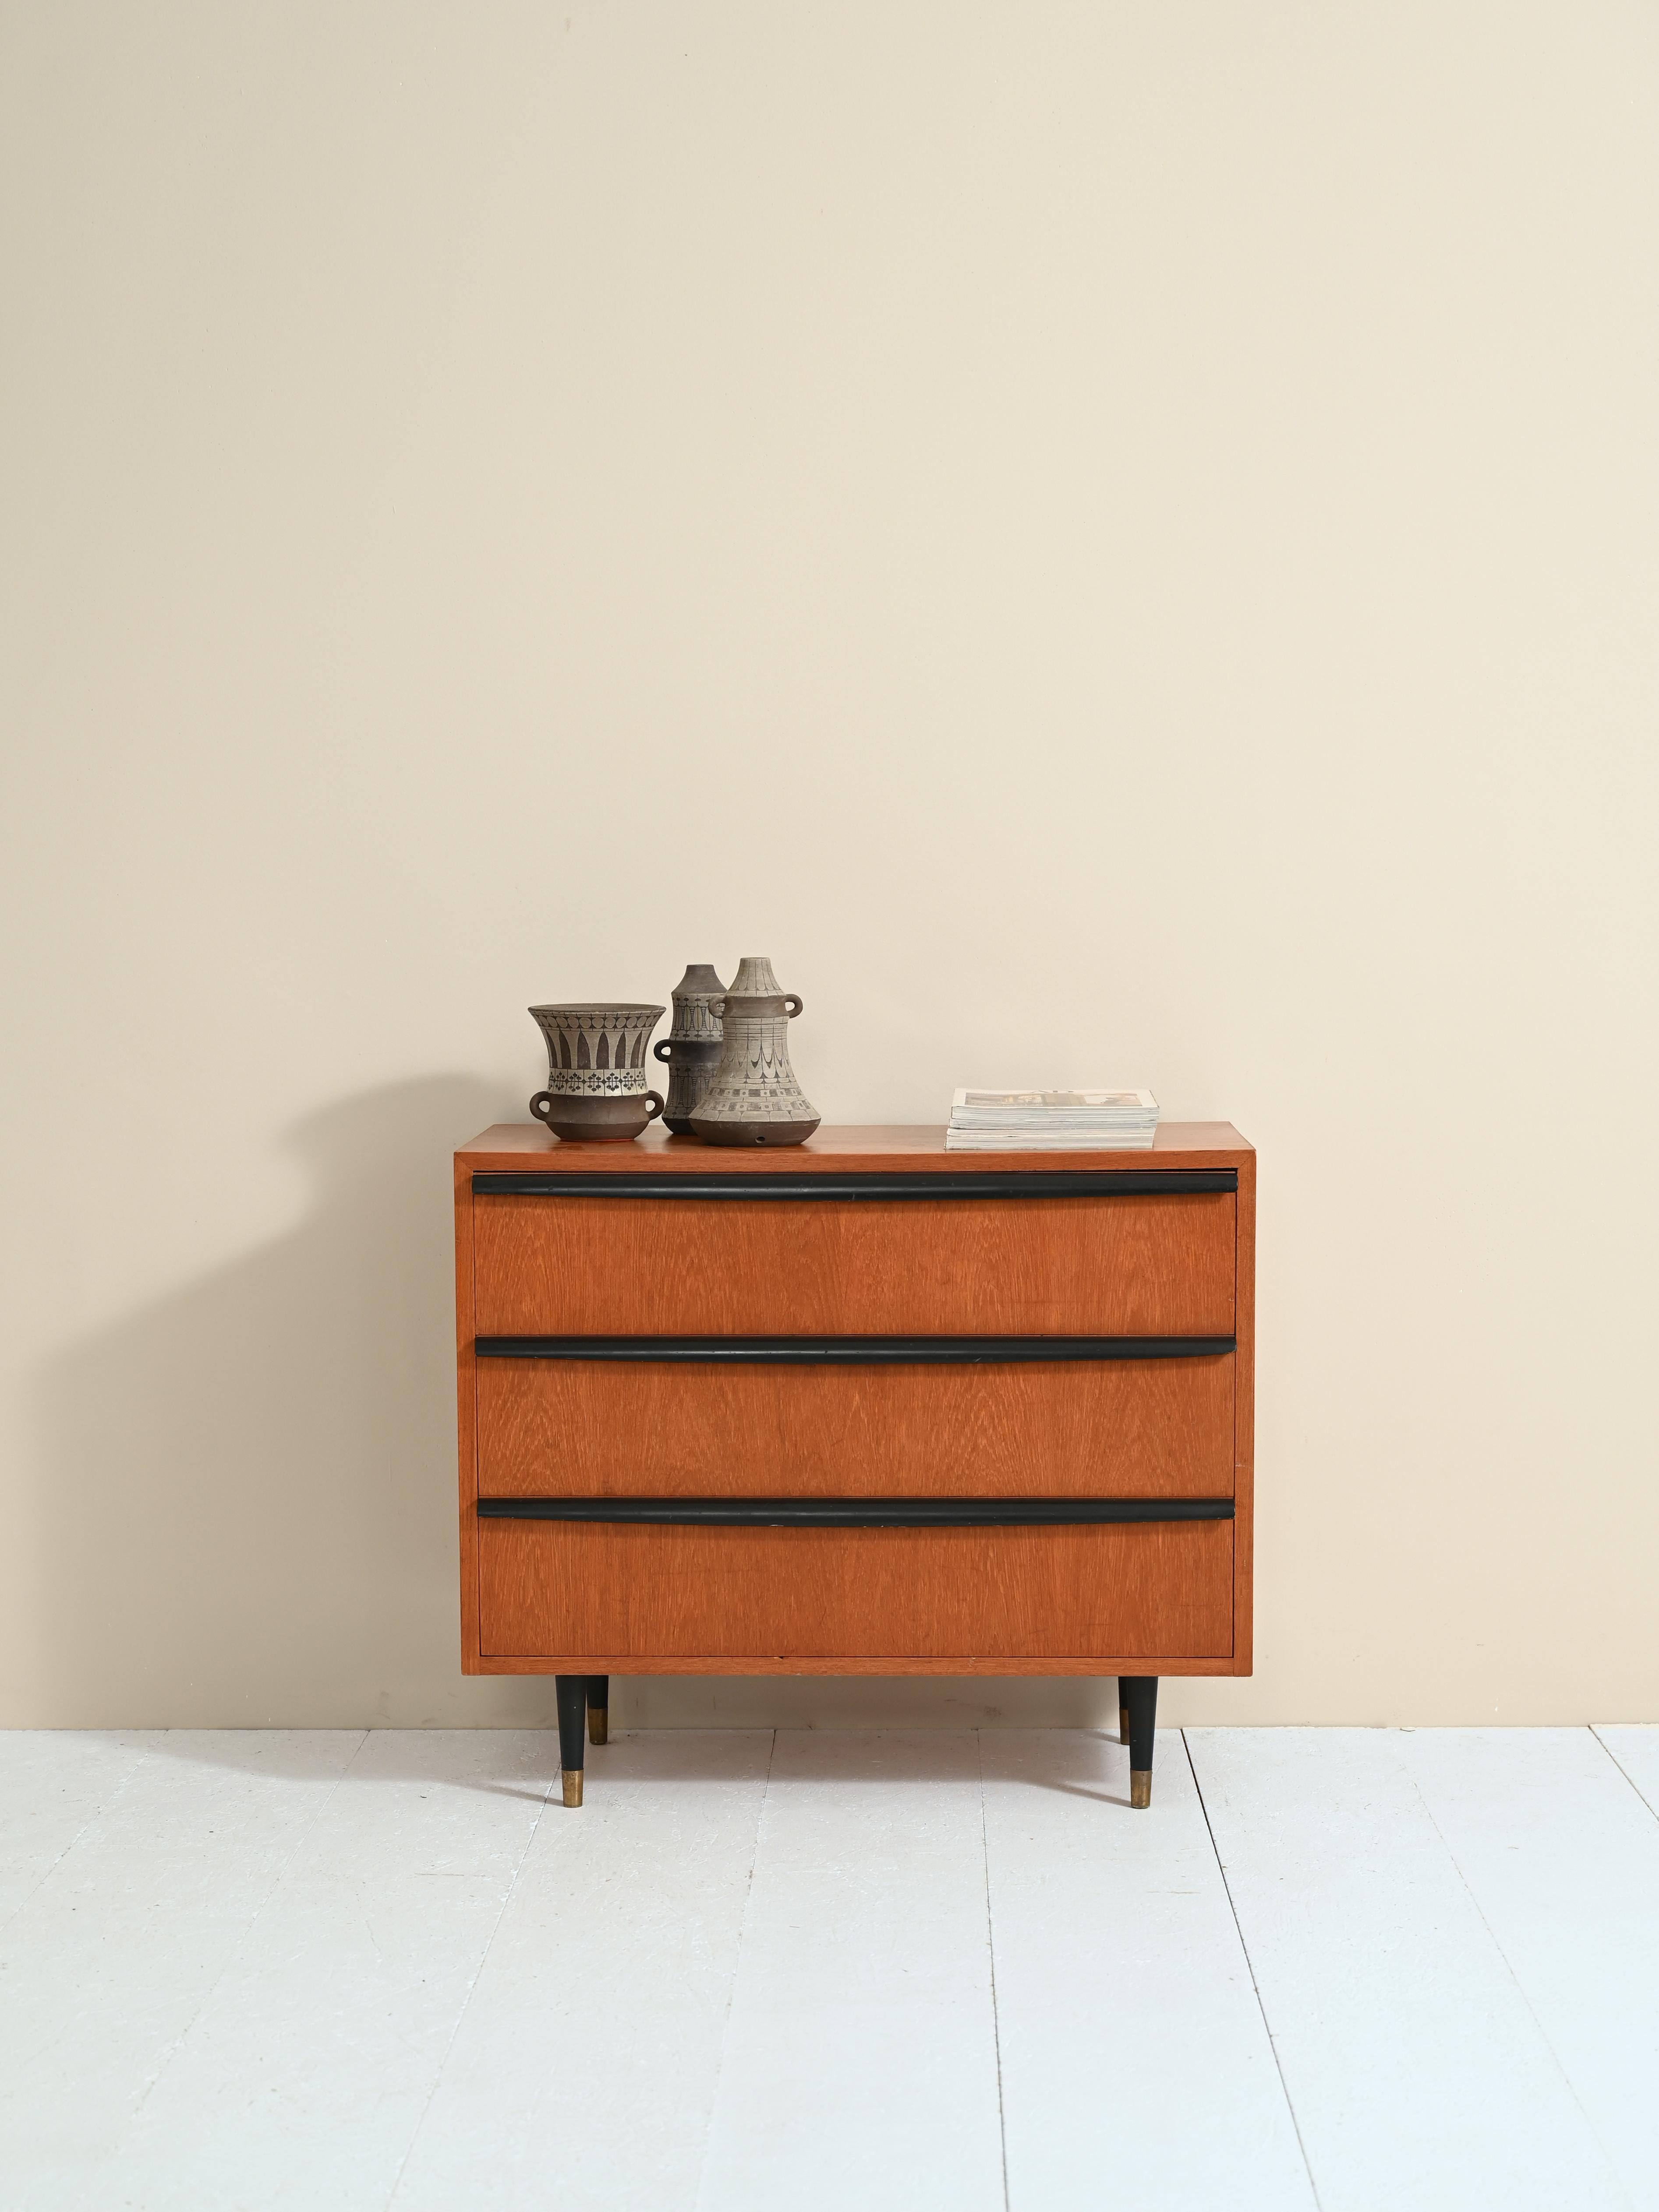 Original cabinet scandinave avec trois tiroirs et des finitions en laiton.

La particularité de ce meuble est sans doute la poignée des tiroirs formée par des lattes de bois sculptées de 70 centimètres de long et peintes en noir comme les